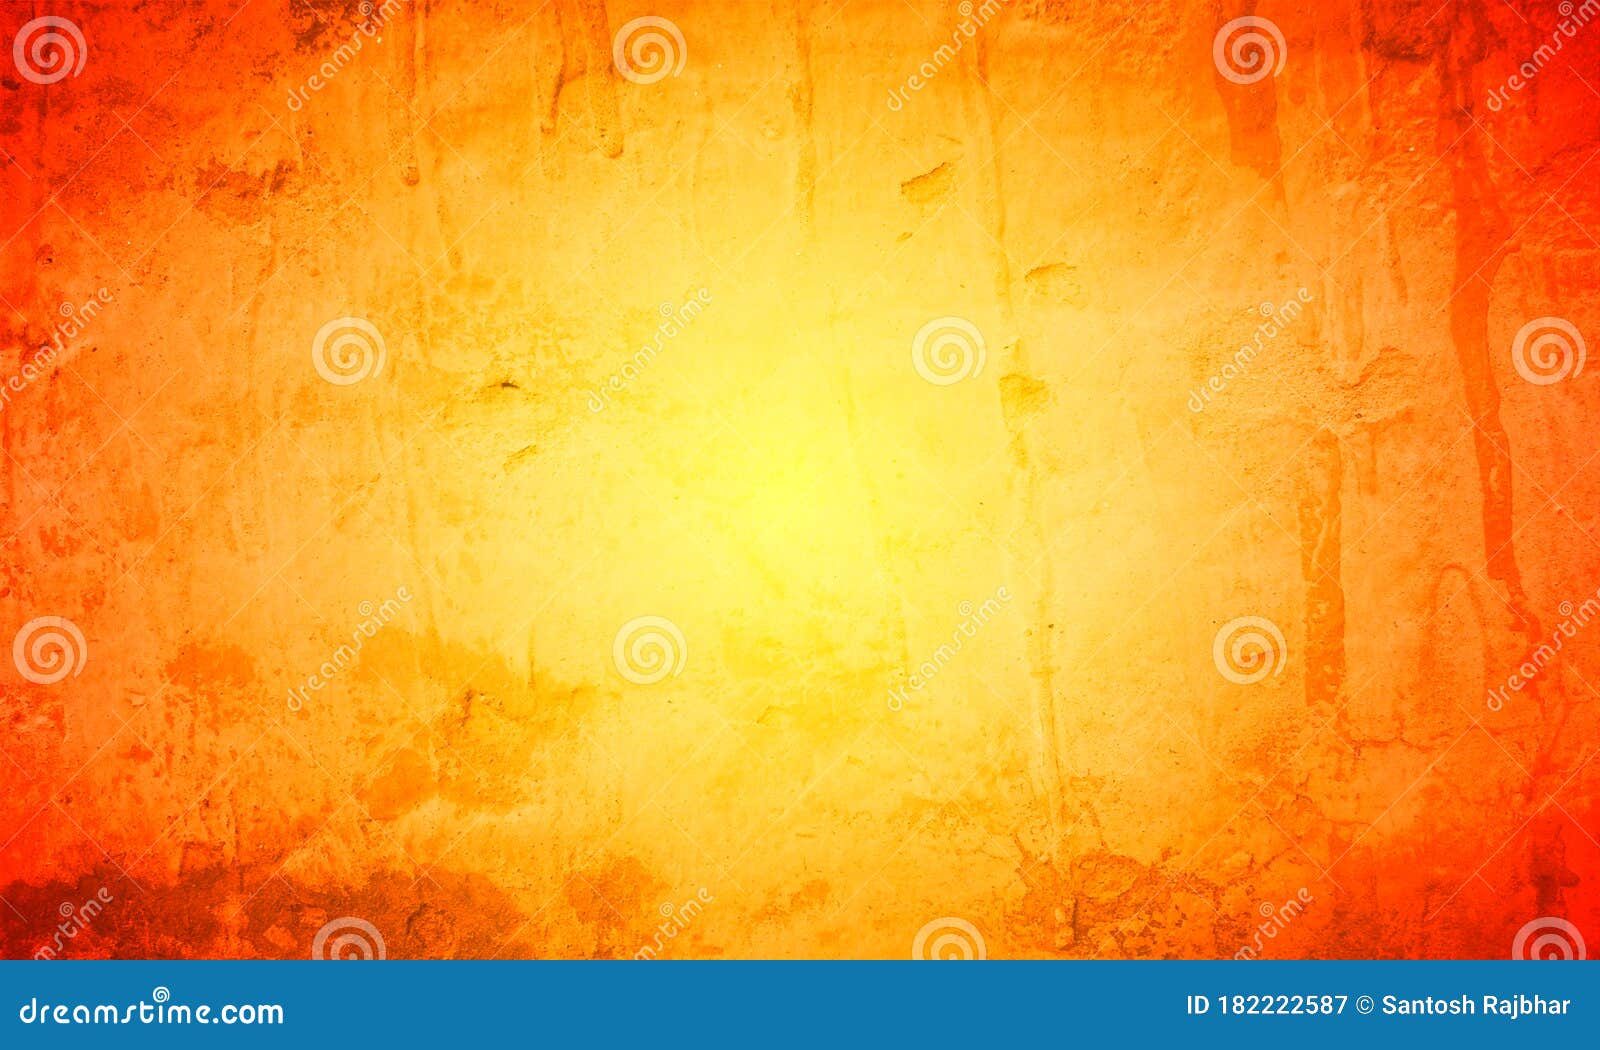 Đang muốn tìm kiếm một hình nền trừu tượng độc đáo trong gam màu cam và vàng? Hãy tham gia ngay bộ sưu tập vector nền trừu tượng màu cam và vàng, bạn sẽ được hòa mình vào không gian đầy tươi vui và sáng tạo. Đừng bỏ lỡ cơ hội để khám phá những hình ảnh đầy sáng tạo này.